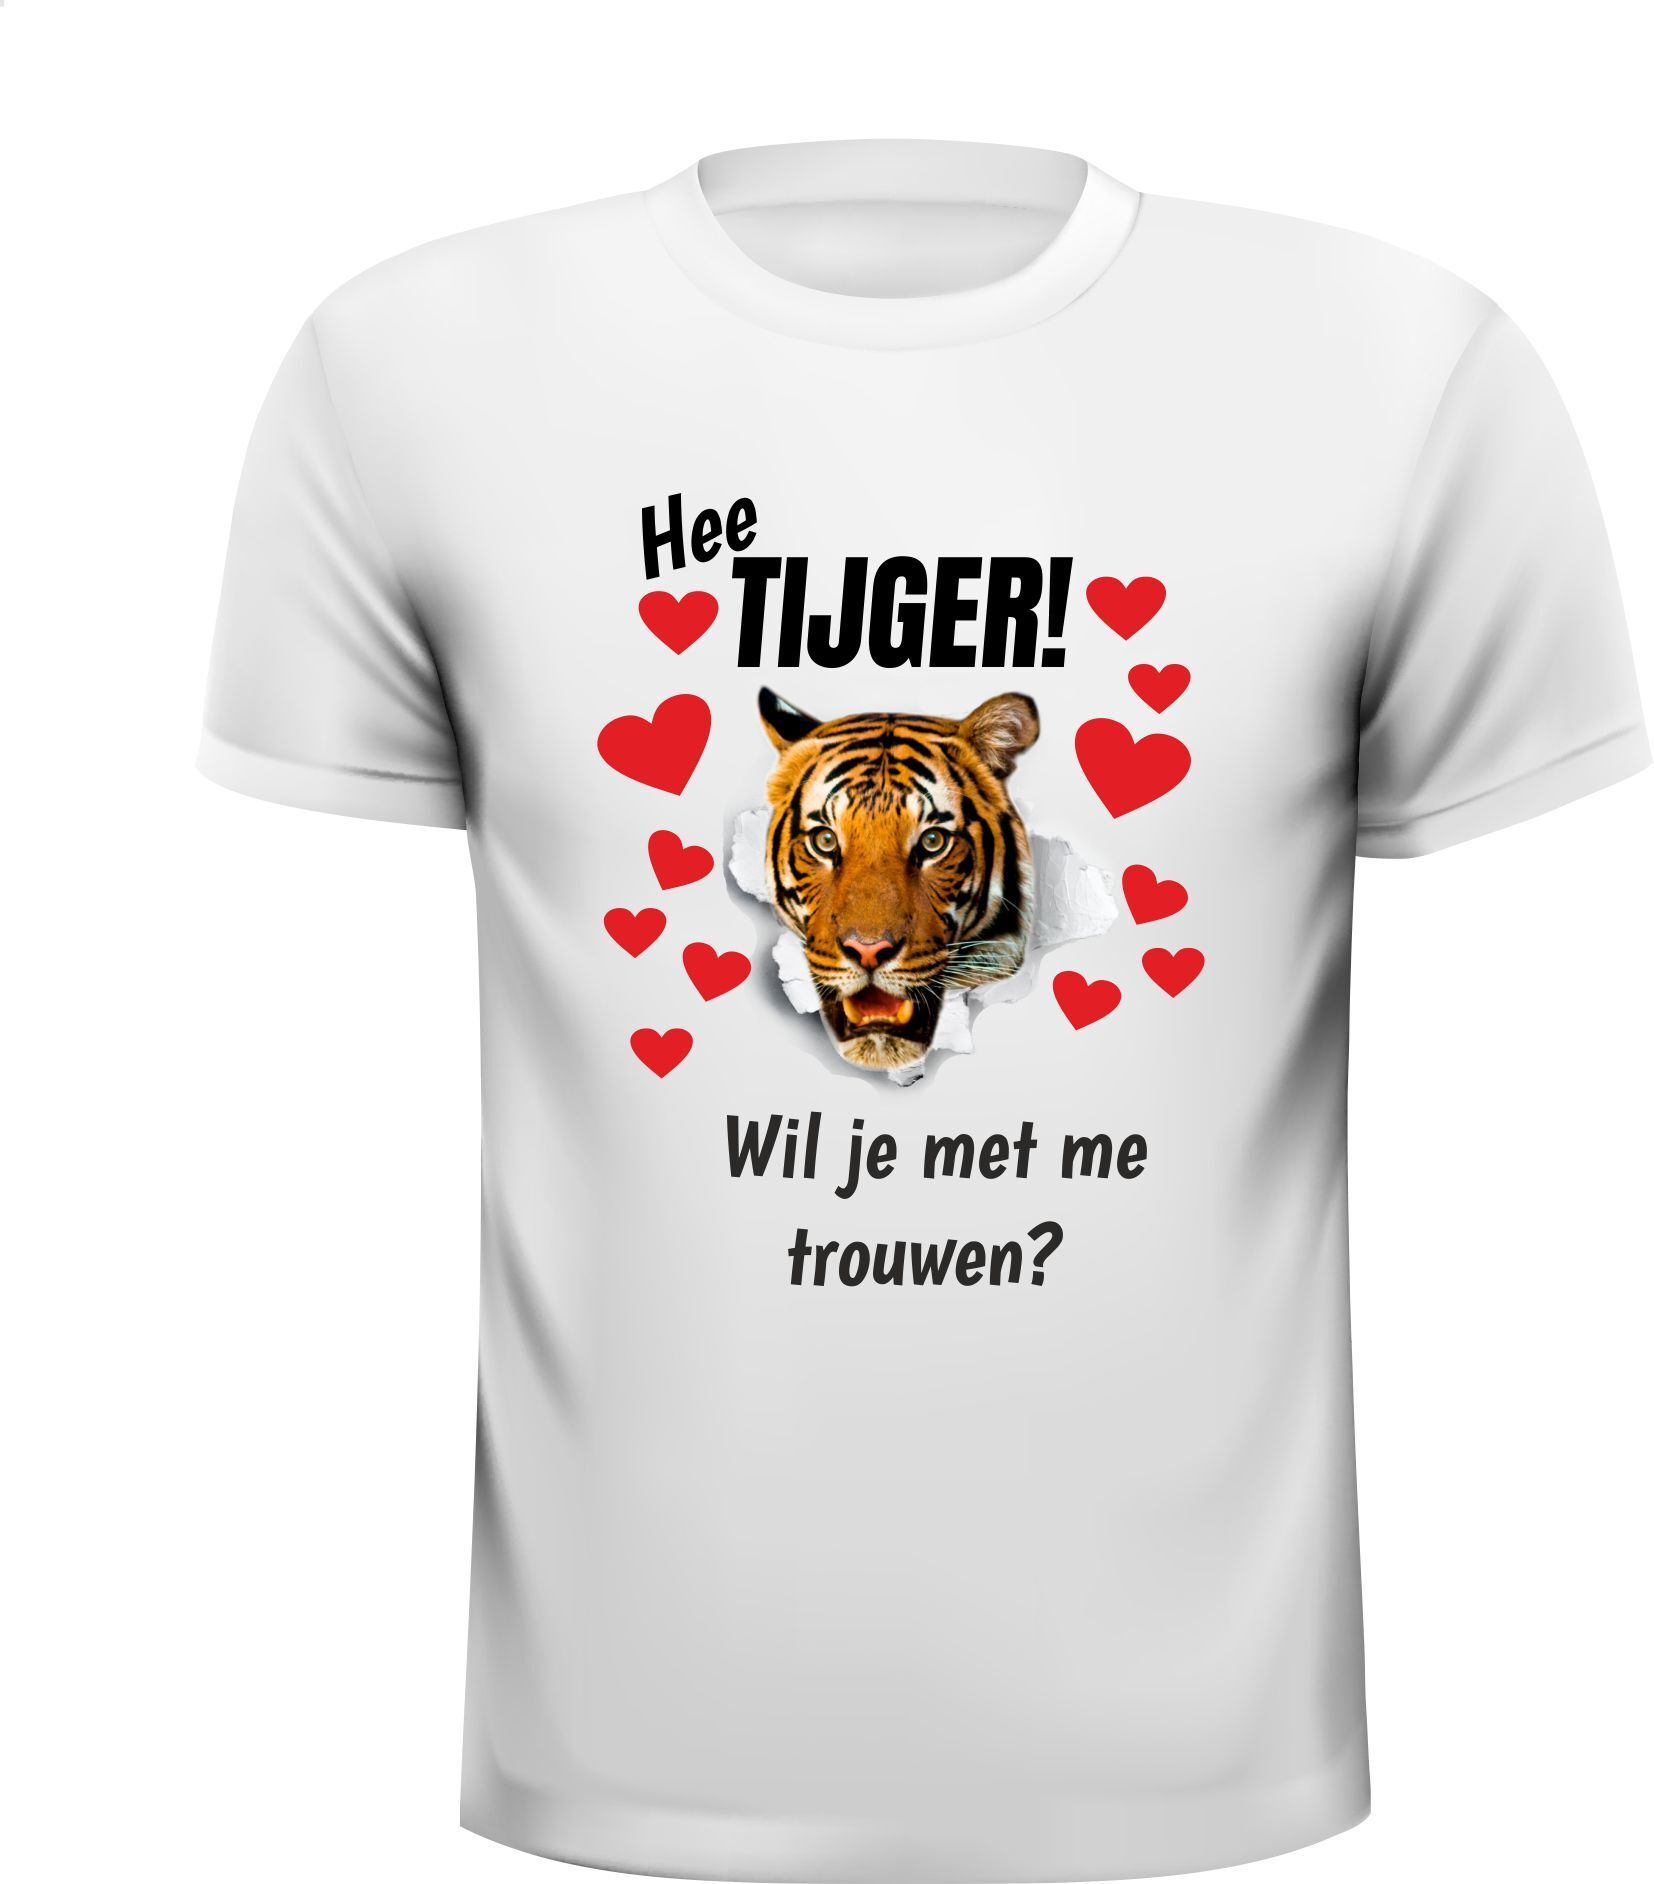 T-shirt hee tijger wil je met me trouwen shirt huwelijksaanzoek